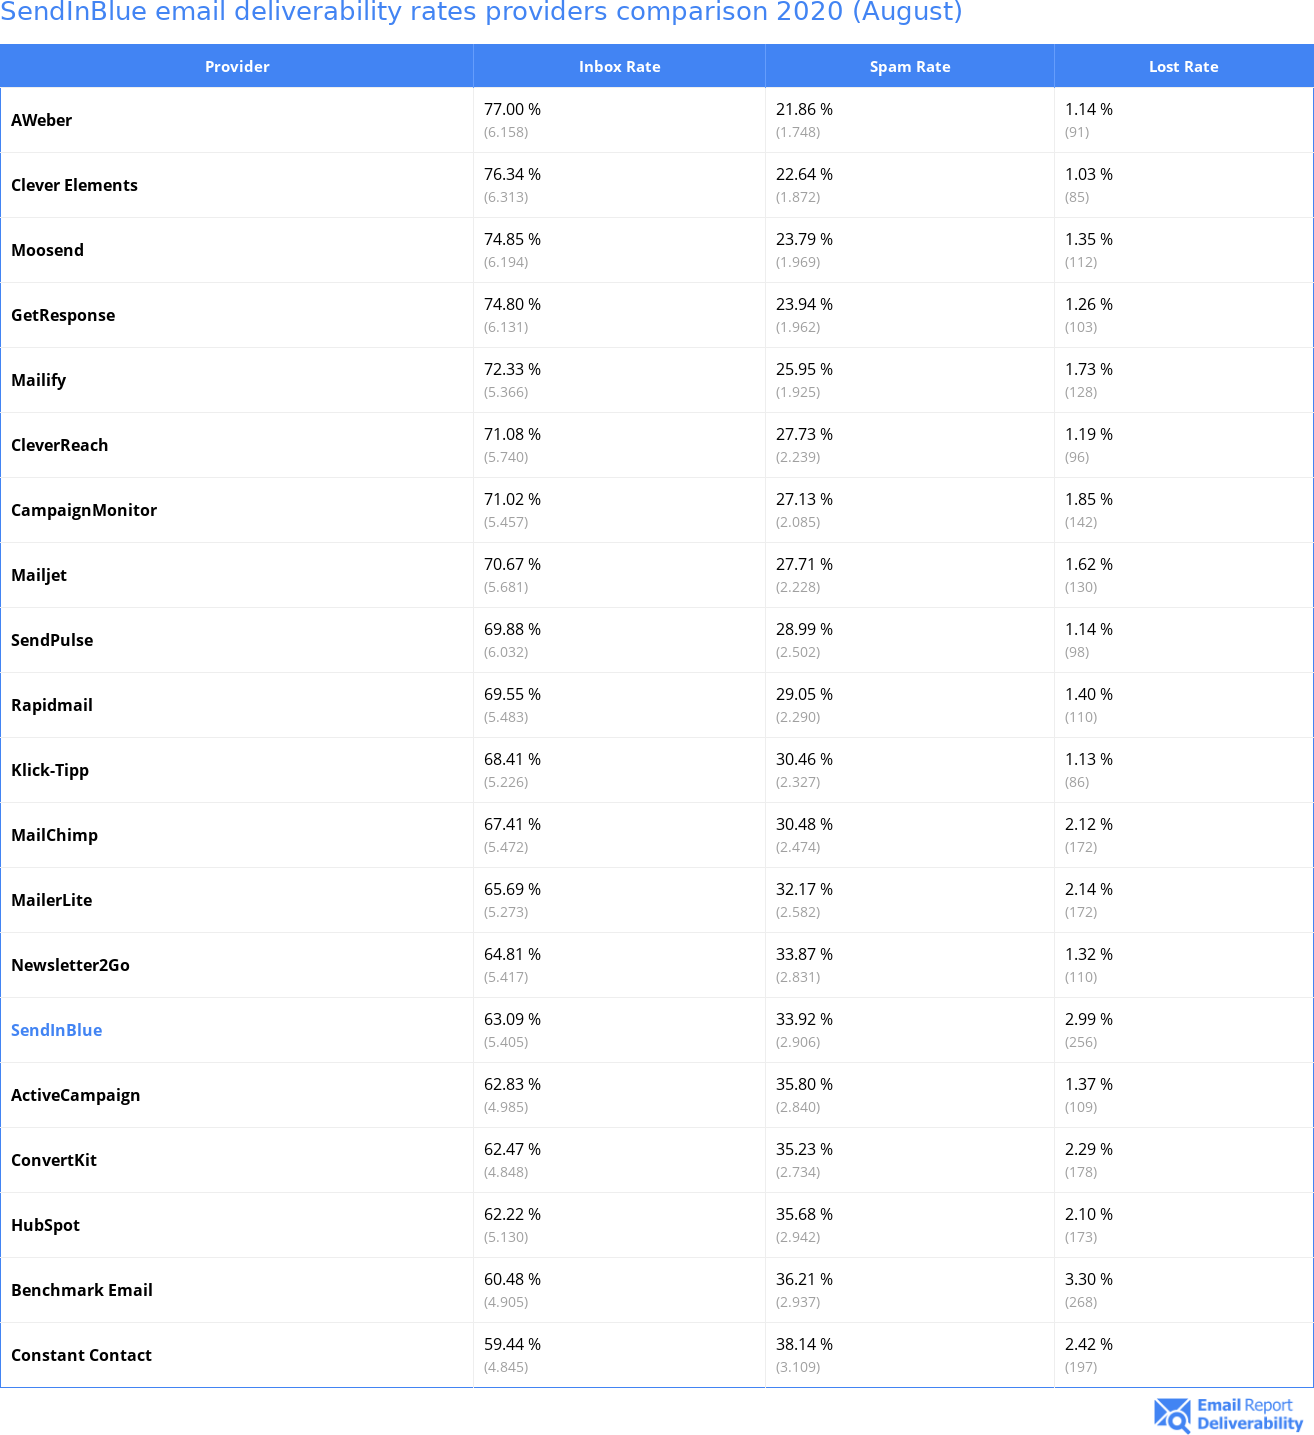 SendInBlue email deliverability rates providers comparison 2020 (August)